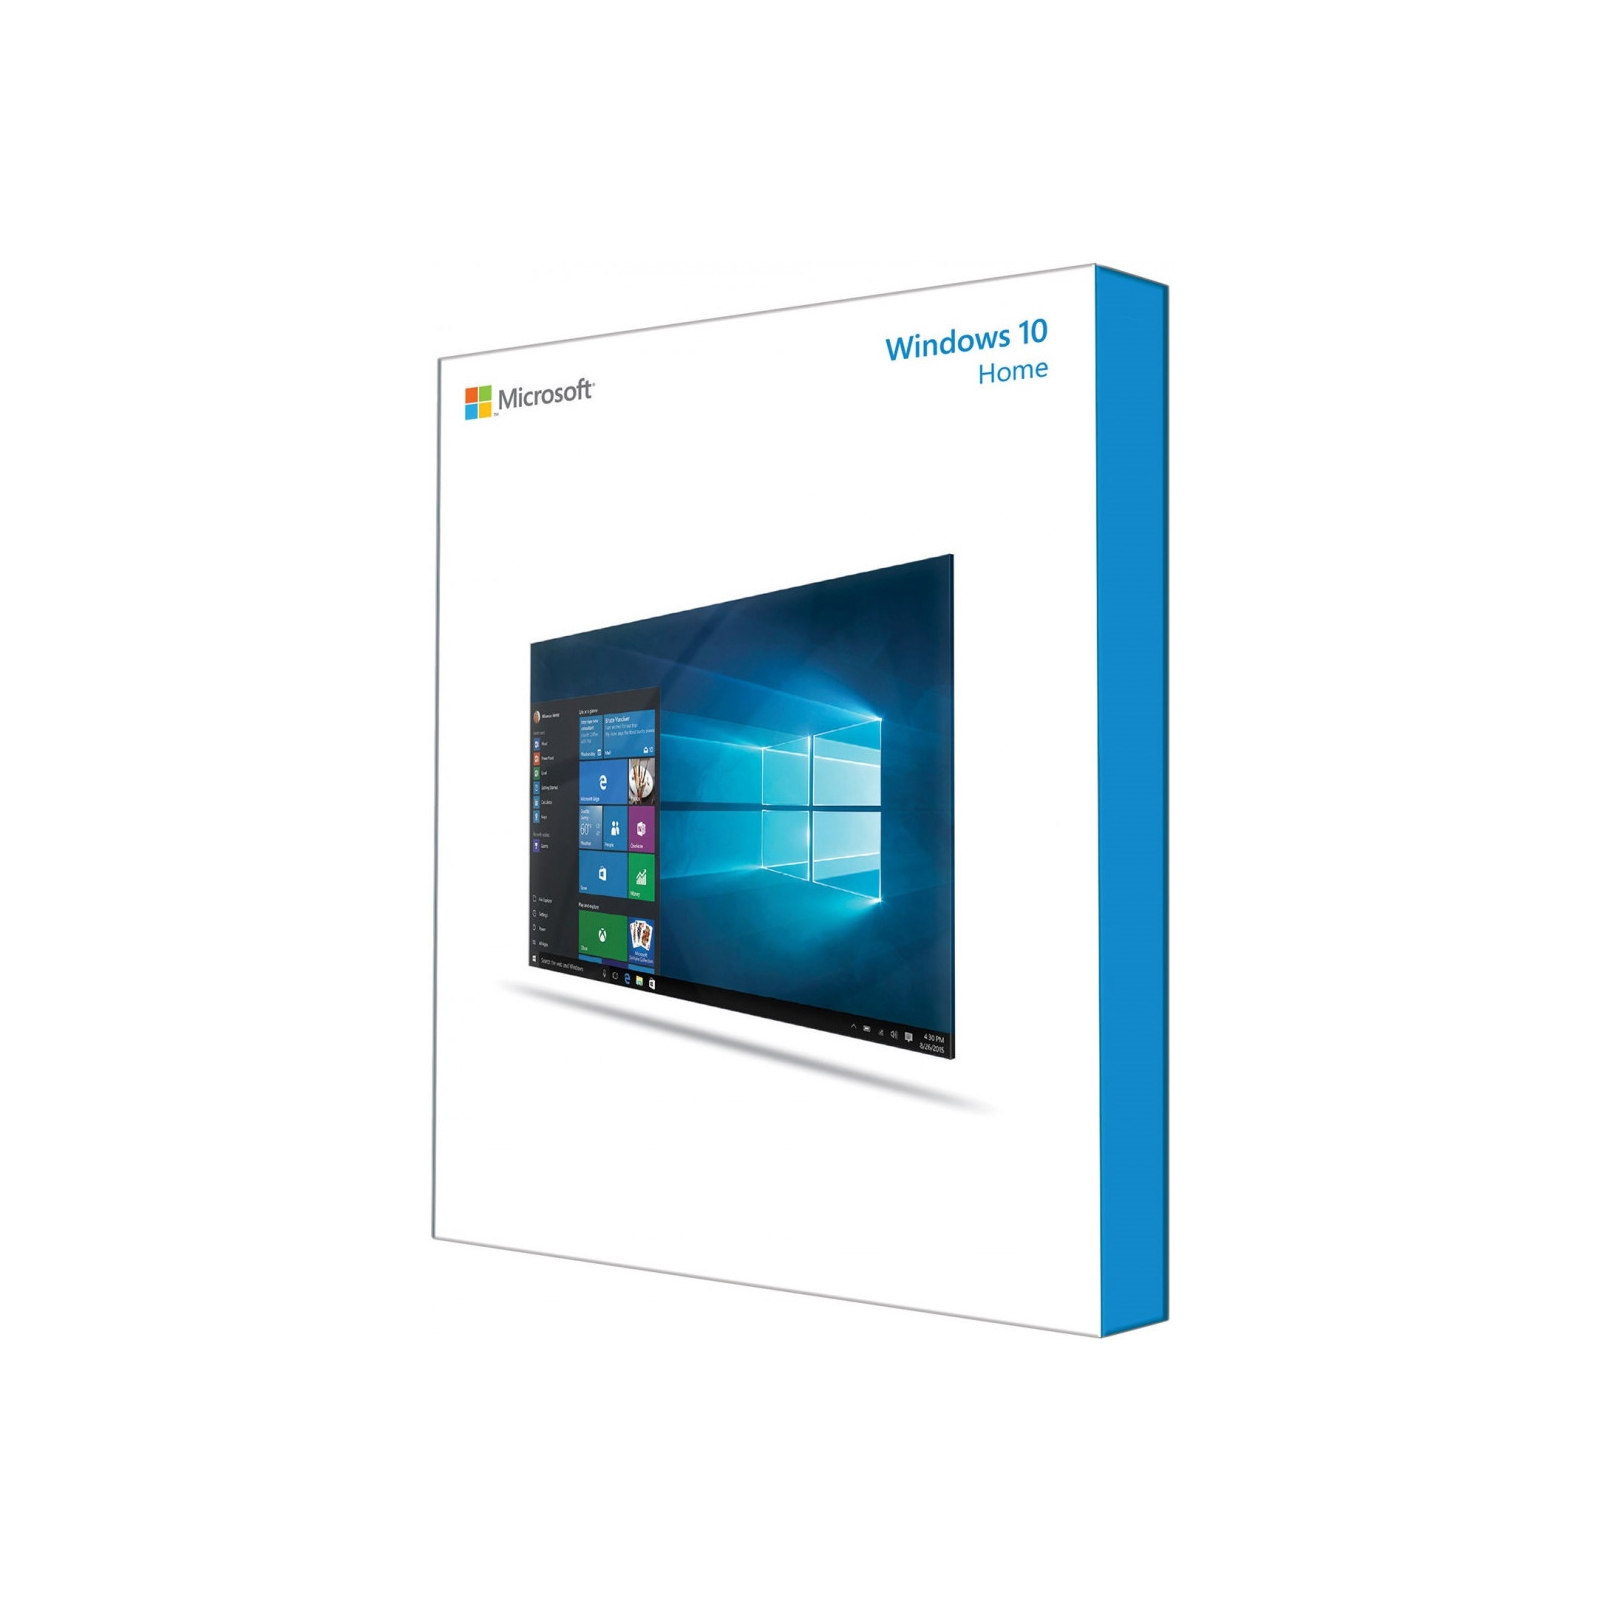 Операционная система Microsoft Windows 10 Home 32-bit/64-bit English USB P2 (HAJ-00054)